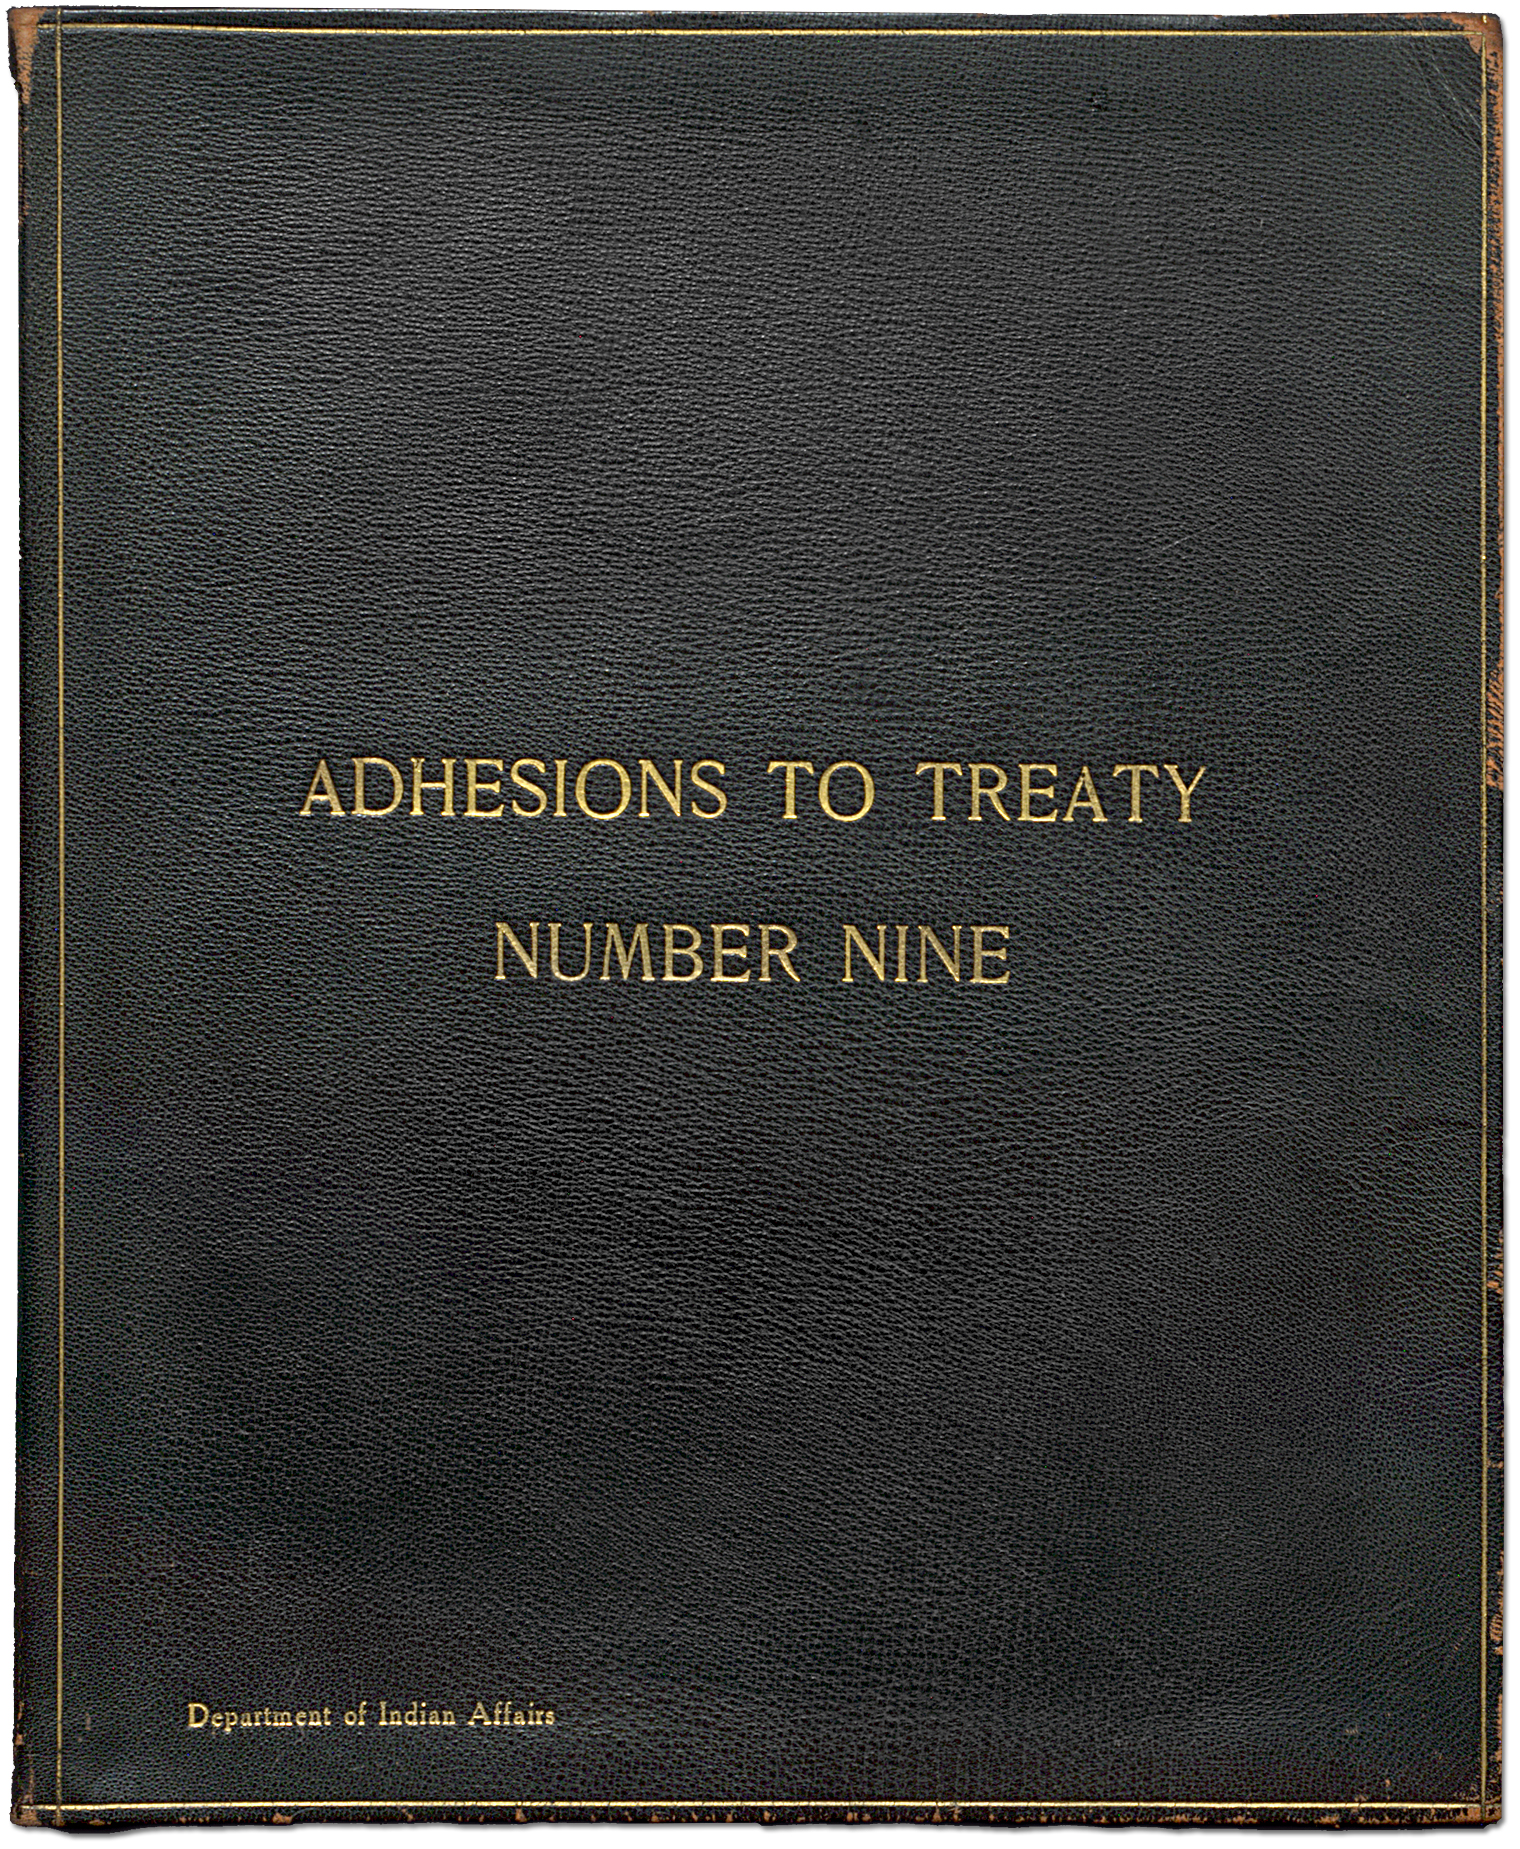 James Bay Treaty (Treaty No. 9) - Adhesions [page 1]